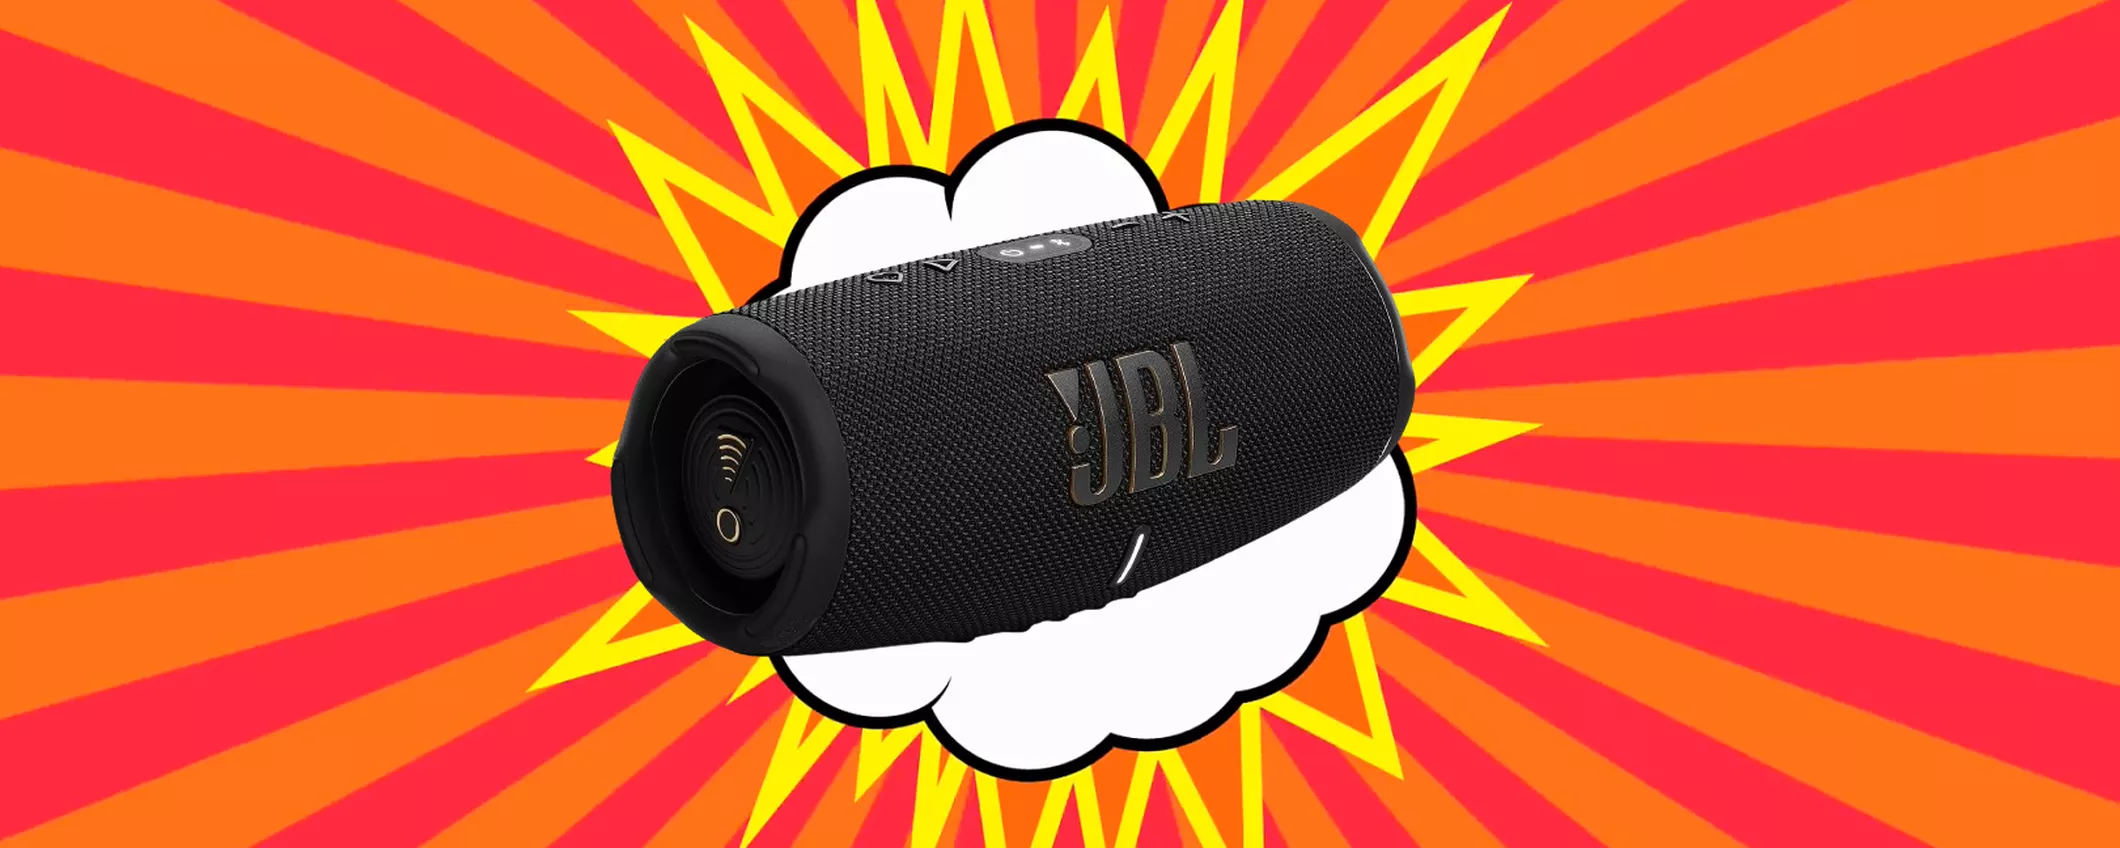 La tua musica OVUNQUE con lo Speaker wireless JBL in MAXI SCONTO